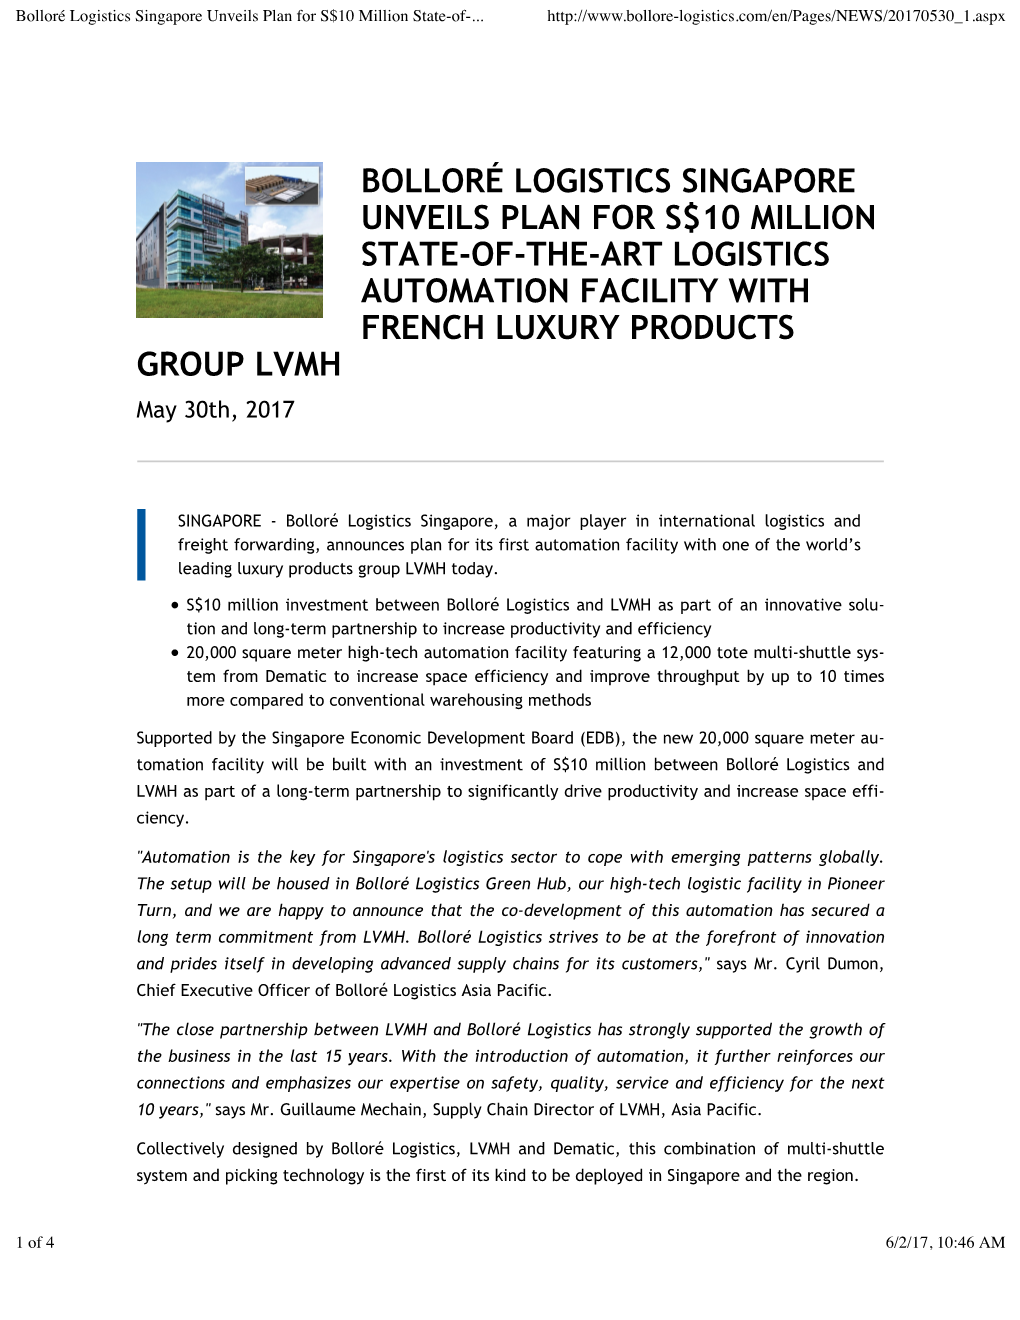 Bolloré Logistics Singapore Unveils Plan for S$10 Million State-Of